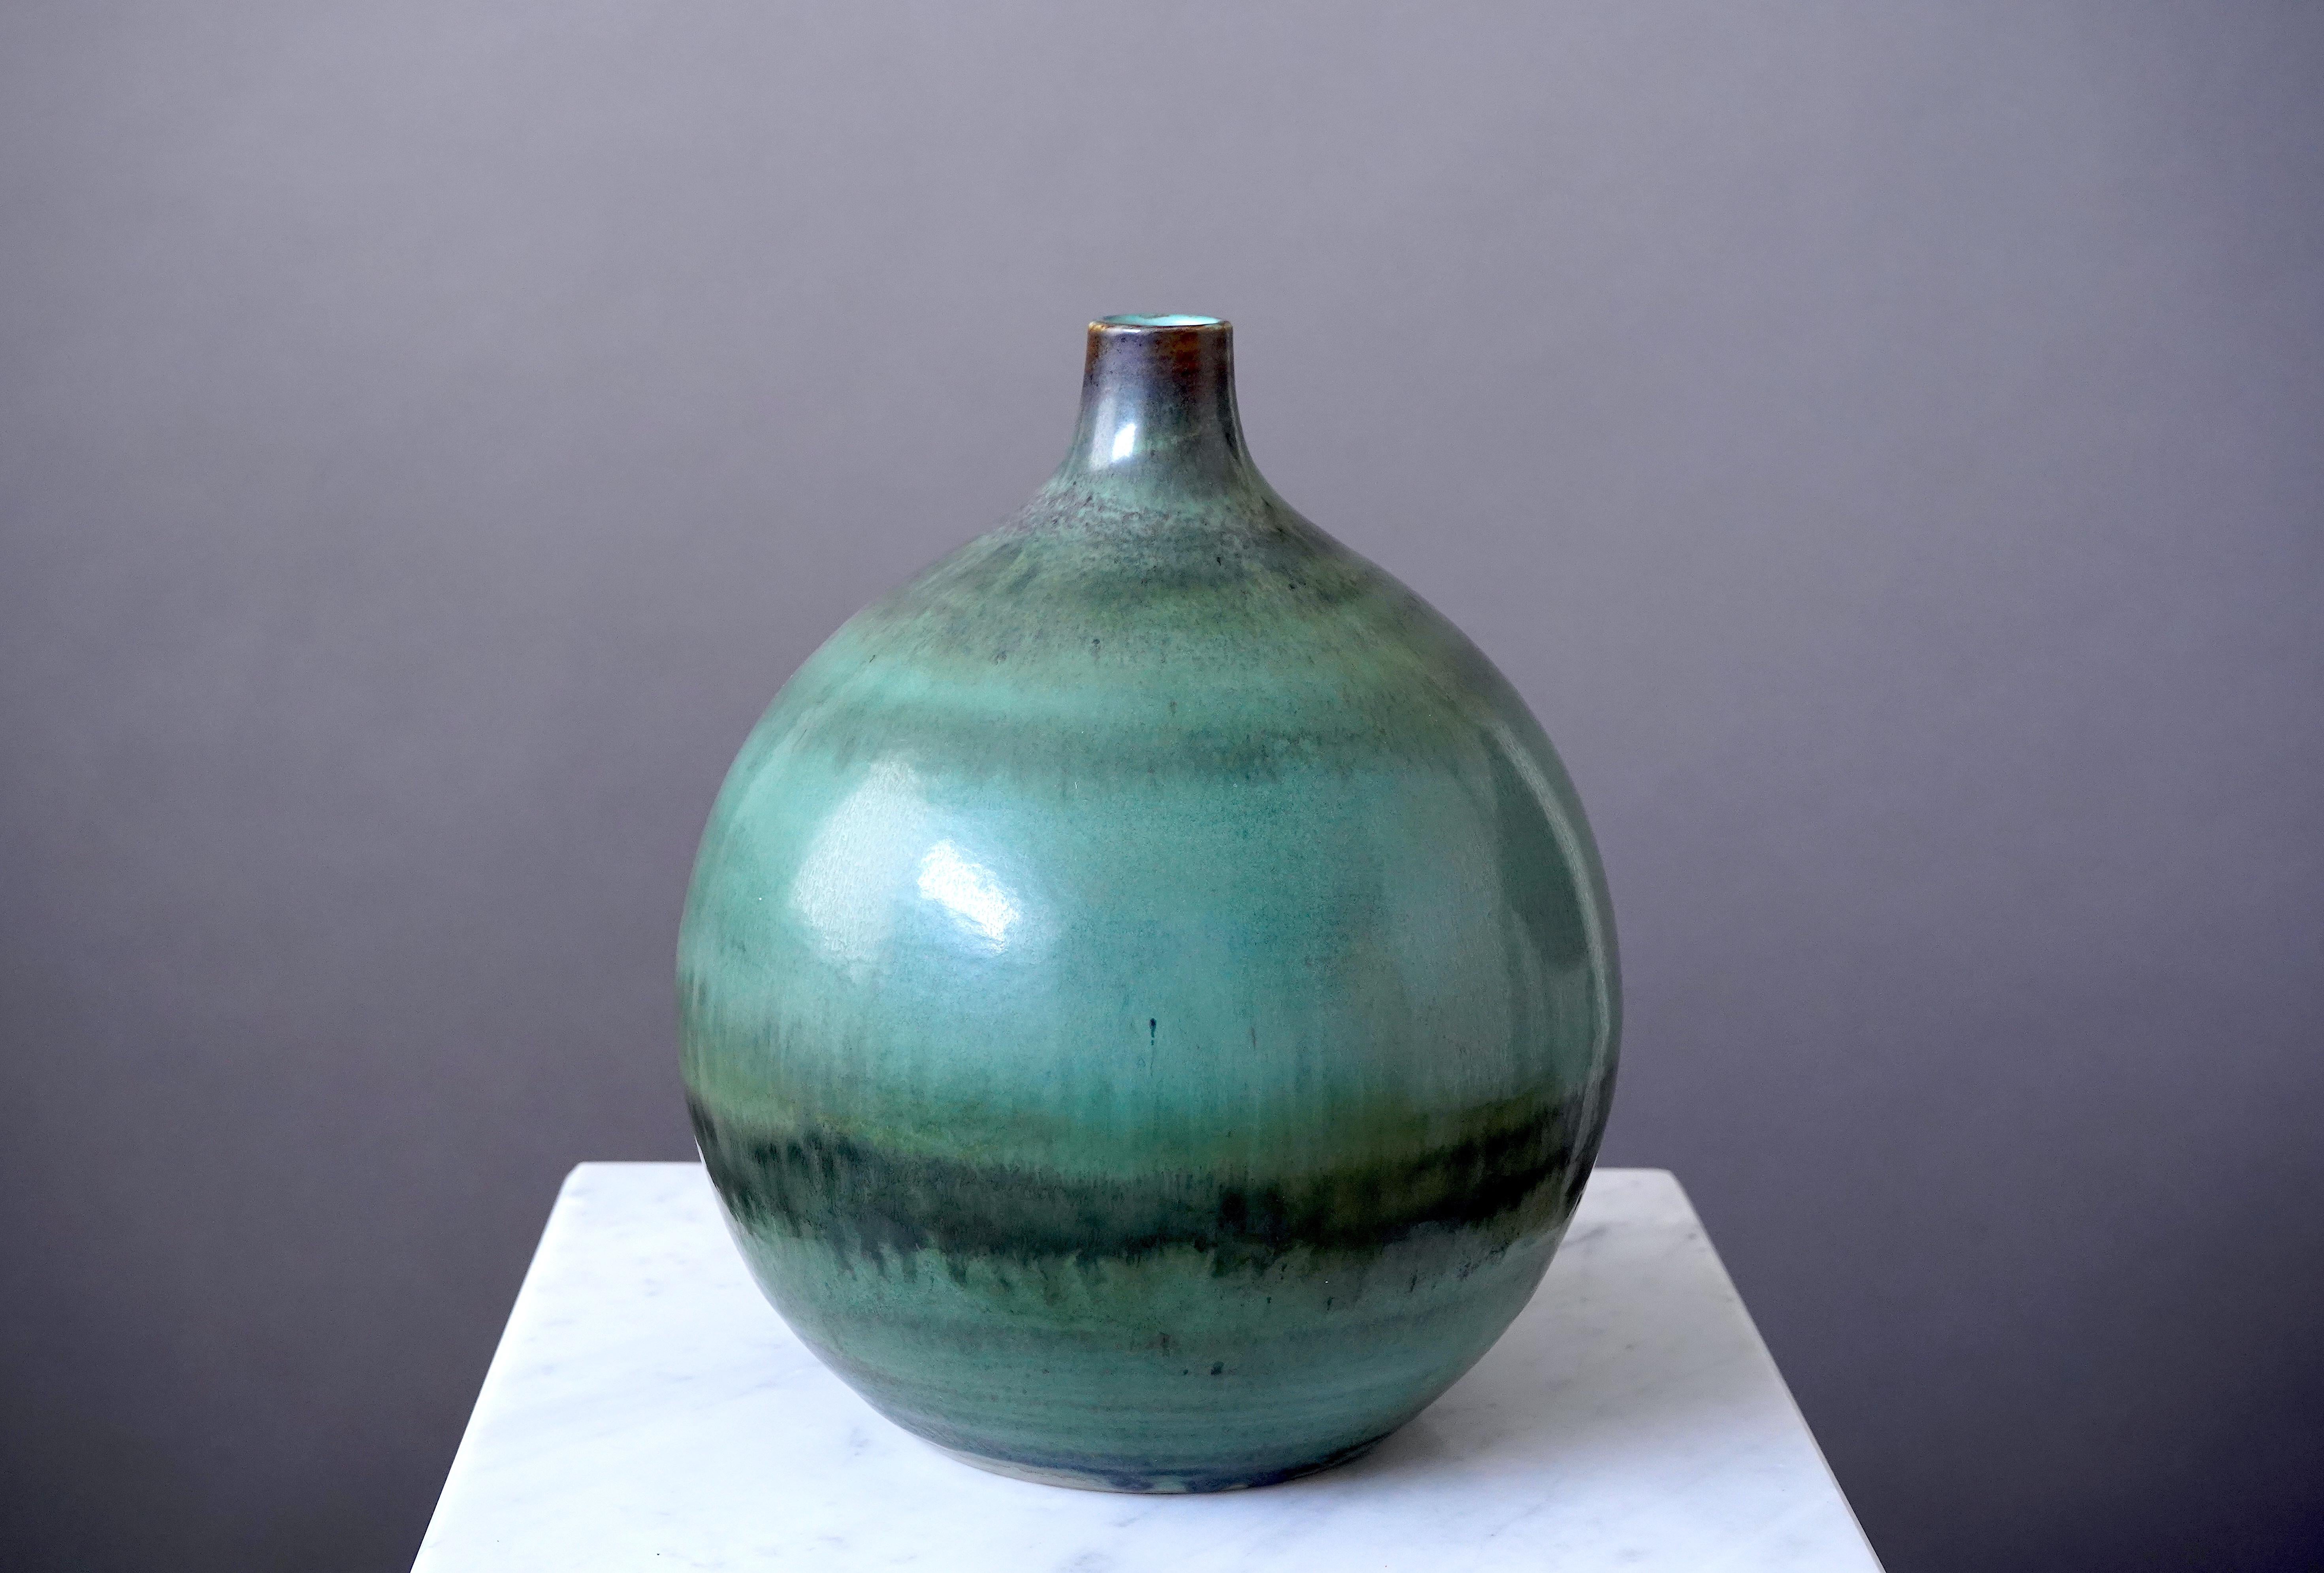 Schöne und seltene Vase, entworfen von Gertrud Lönegren.
Dieses Studio-Stück wurde zwischen 1936-41 in Rorstrand in Schweden geschaffen.

Ausgezeichneter Zustand. Schöne Glasur. 
Aufgedruckt 